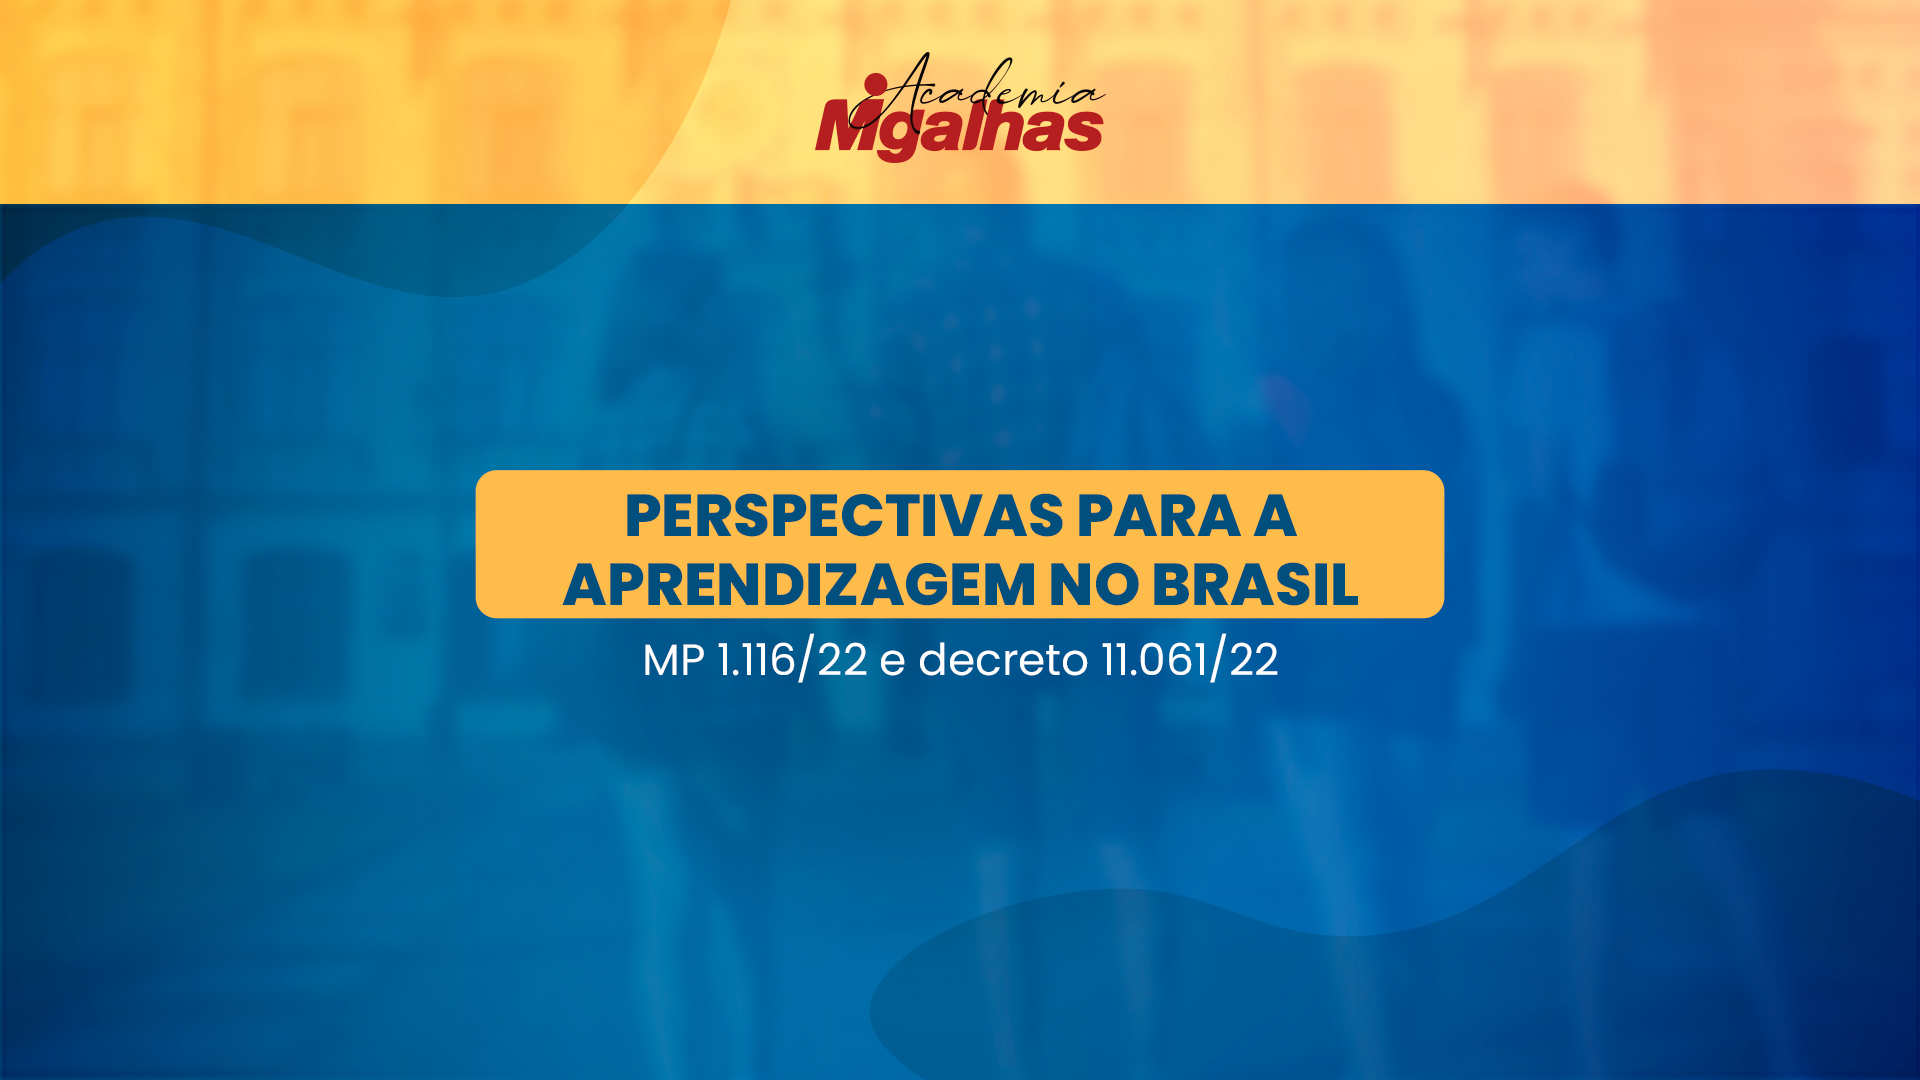 Perspectivas para a aprendizagem no Brasil - MP 1.116/22 e decreto 11.061/22